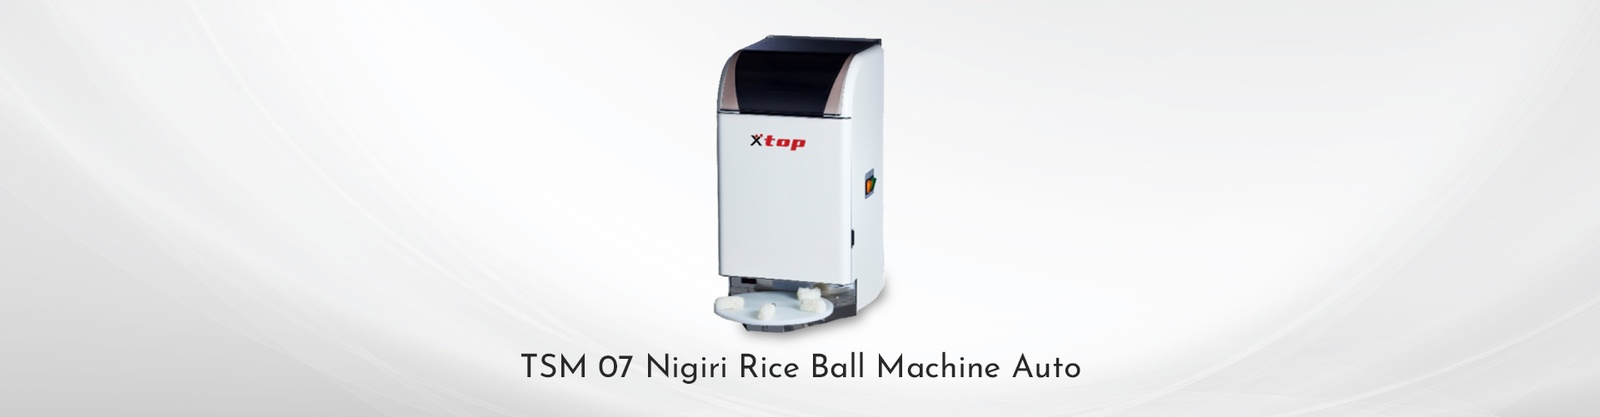 TSM 07 Nigiri Rice Ball Machine Auto